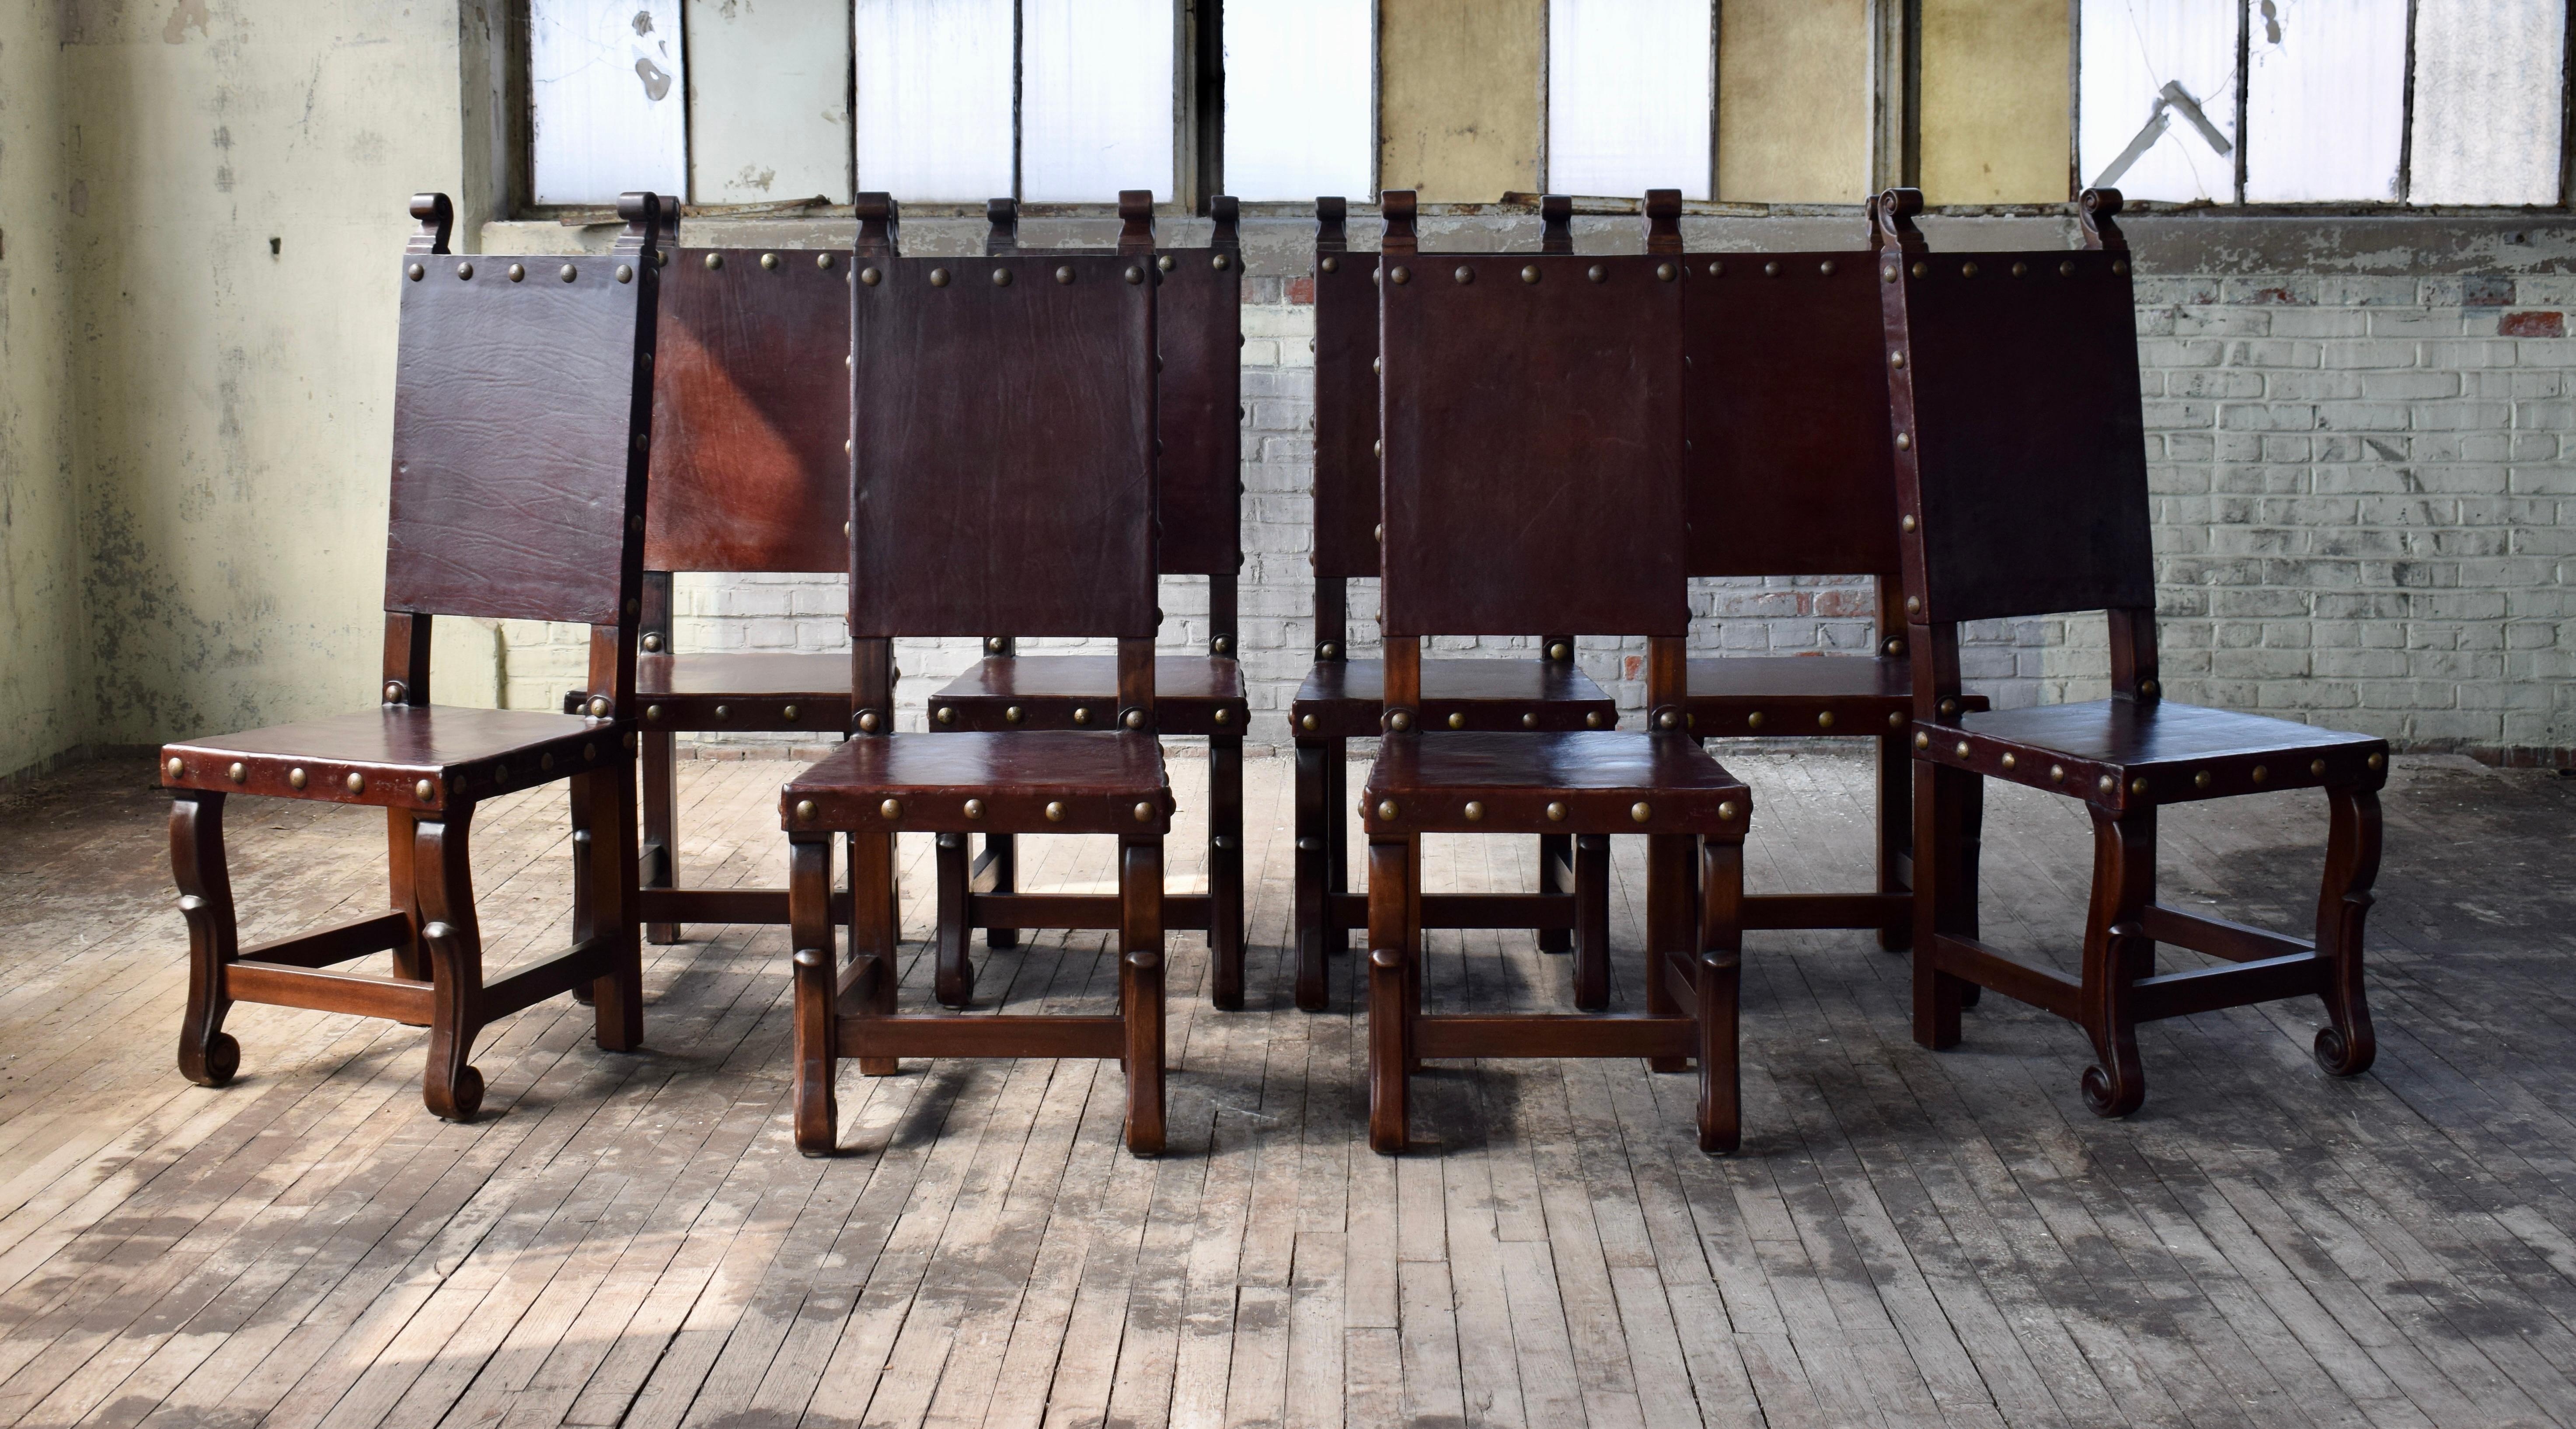 Ensemble de 10 chaises de salle à manger en bois sculpté avec sièges et dossiers en cuir épais agrémentés de têtes de clous en laiton dans le style Coloni espagnol. Magnifique état solide comme le roc, prêt à l'emploi.